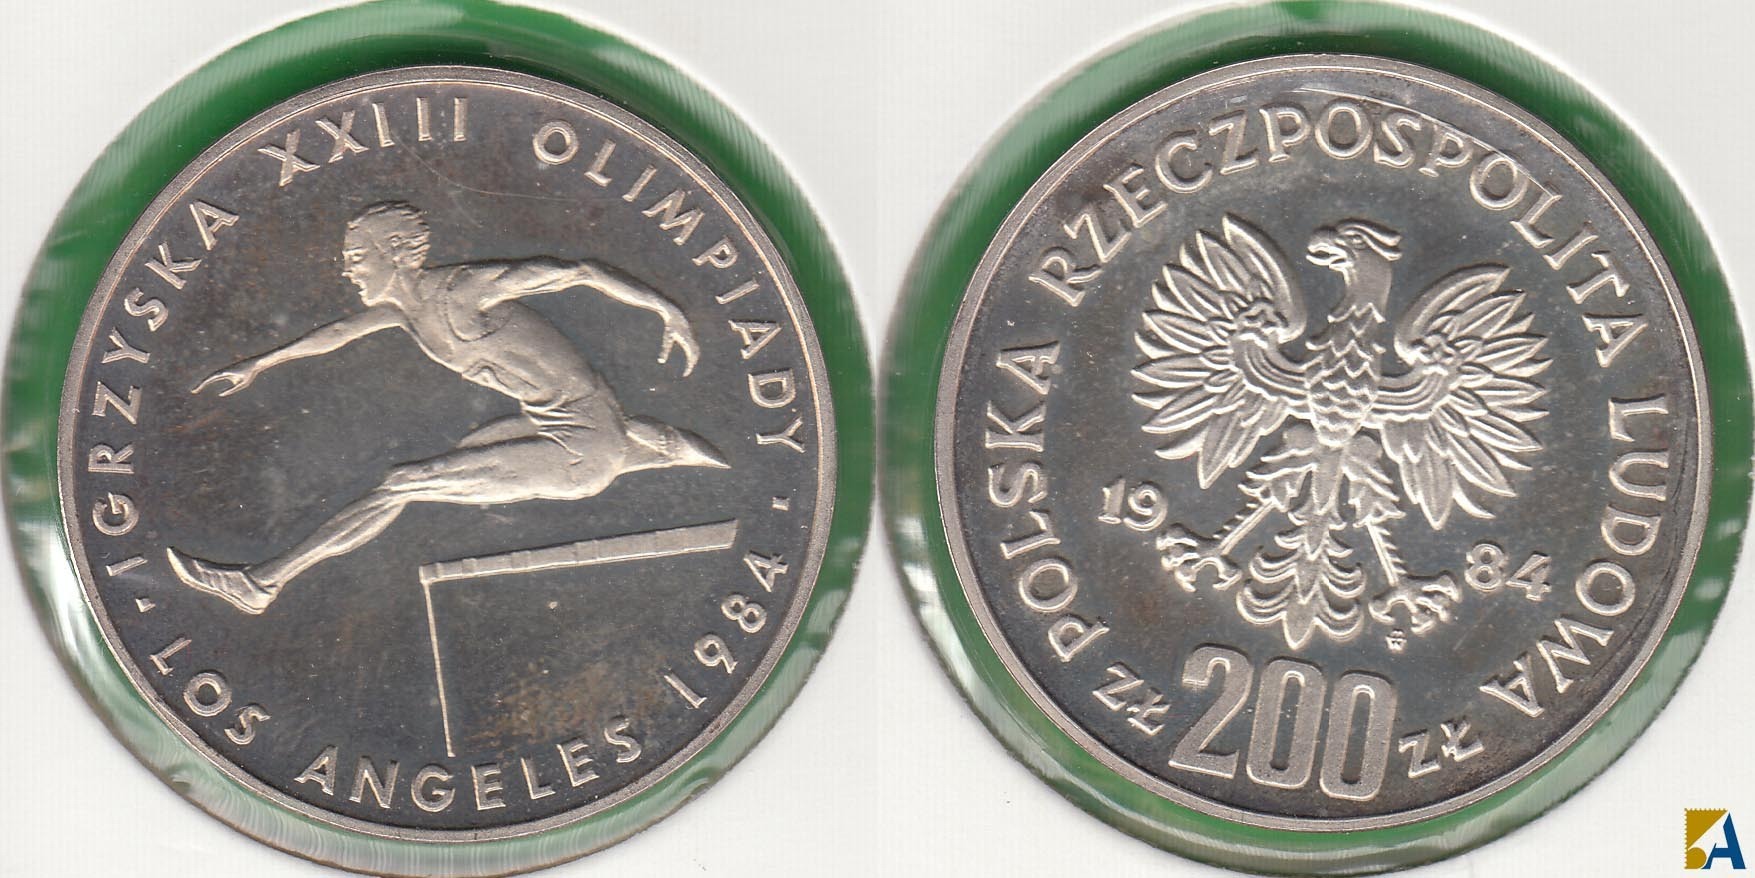 POLONIA - POLSKA. 200 ZLOTYCH DE 1984. PLATA 0.750.